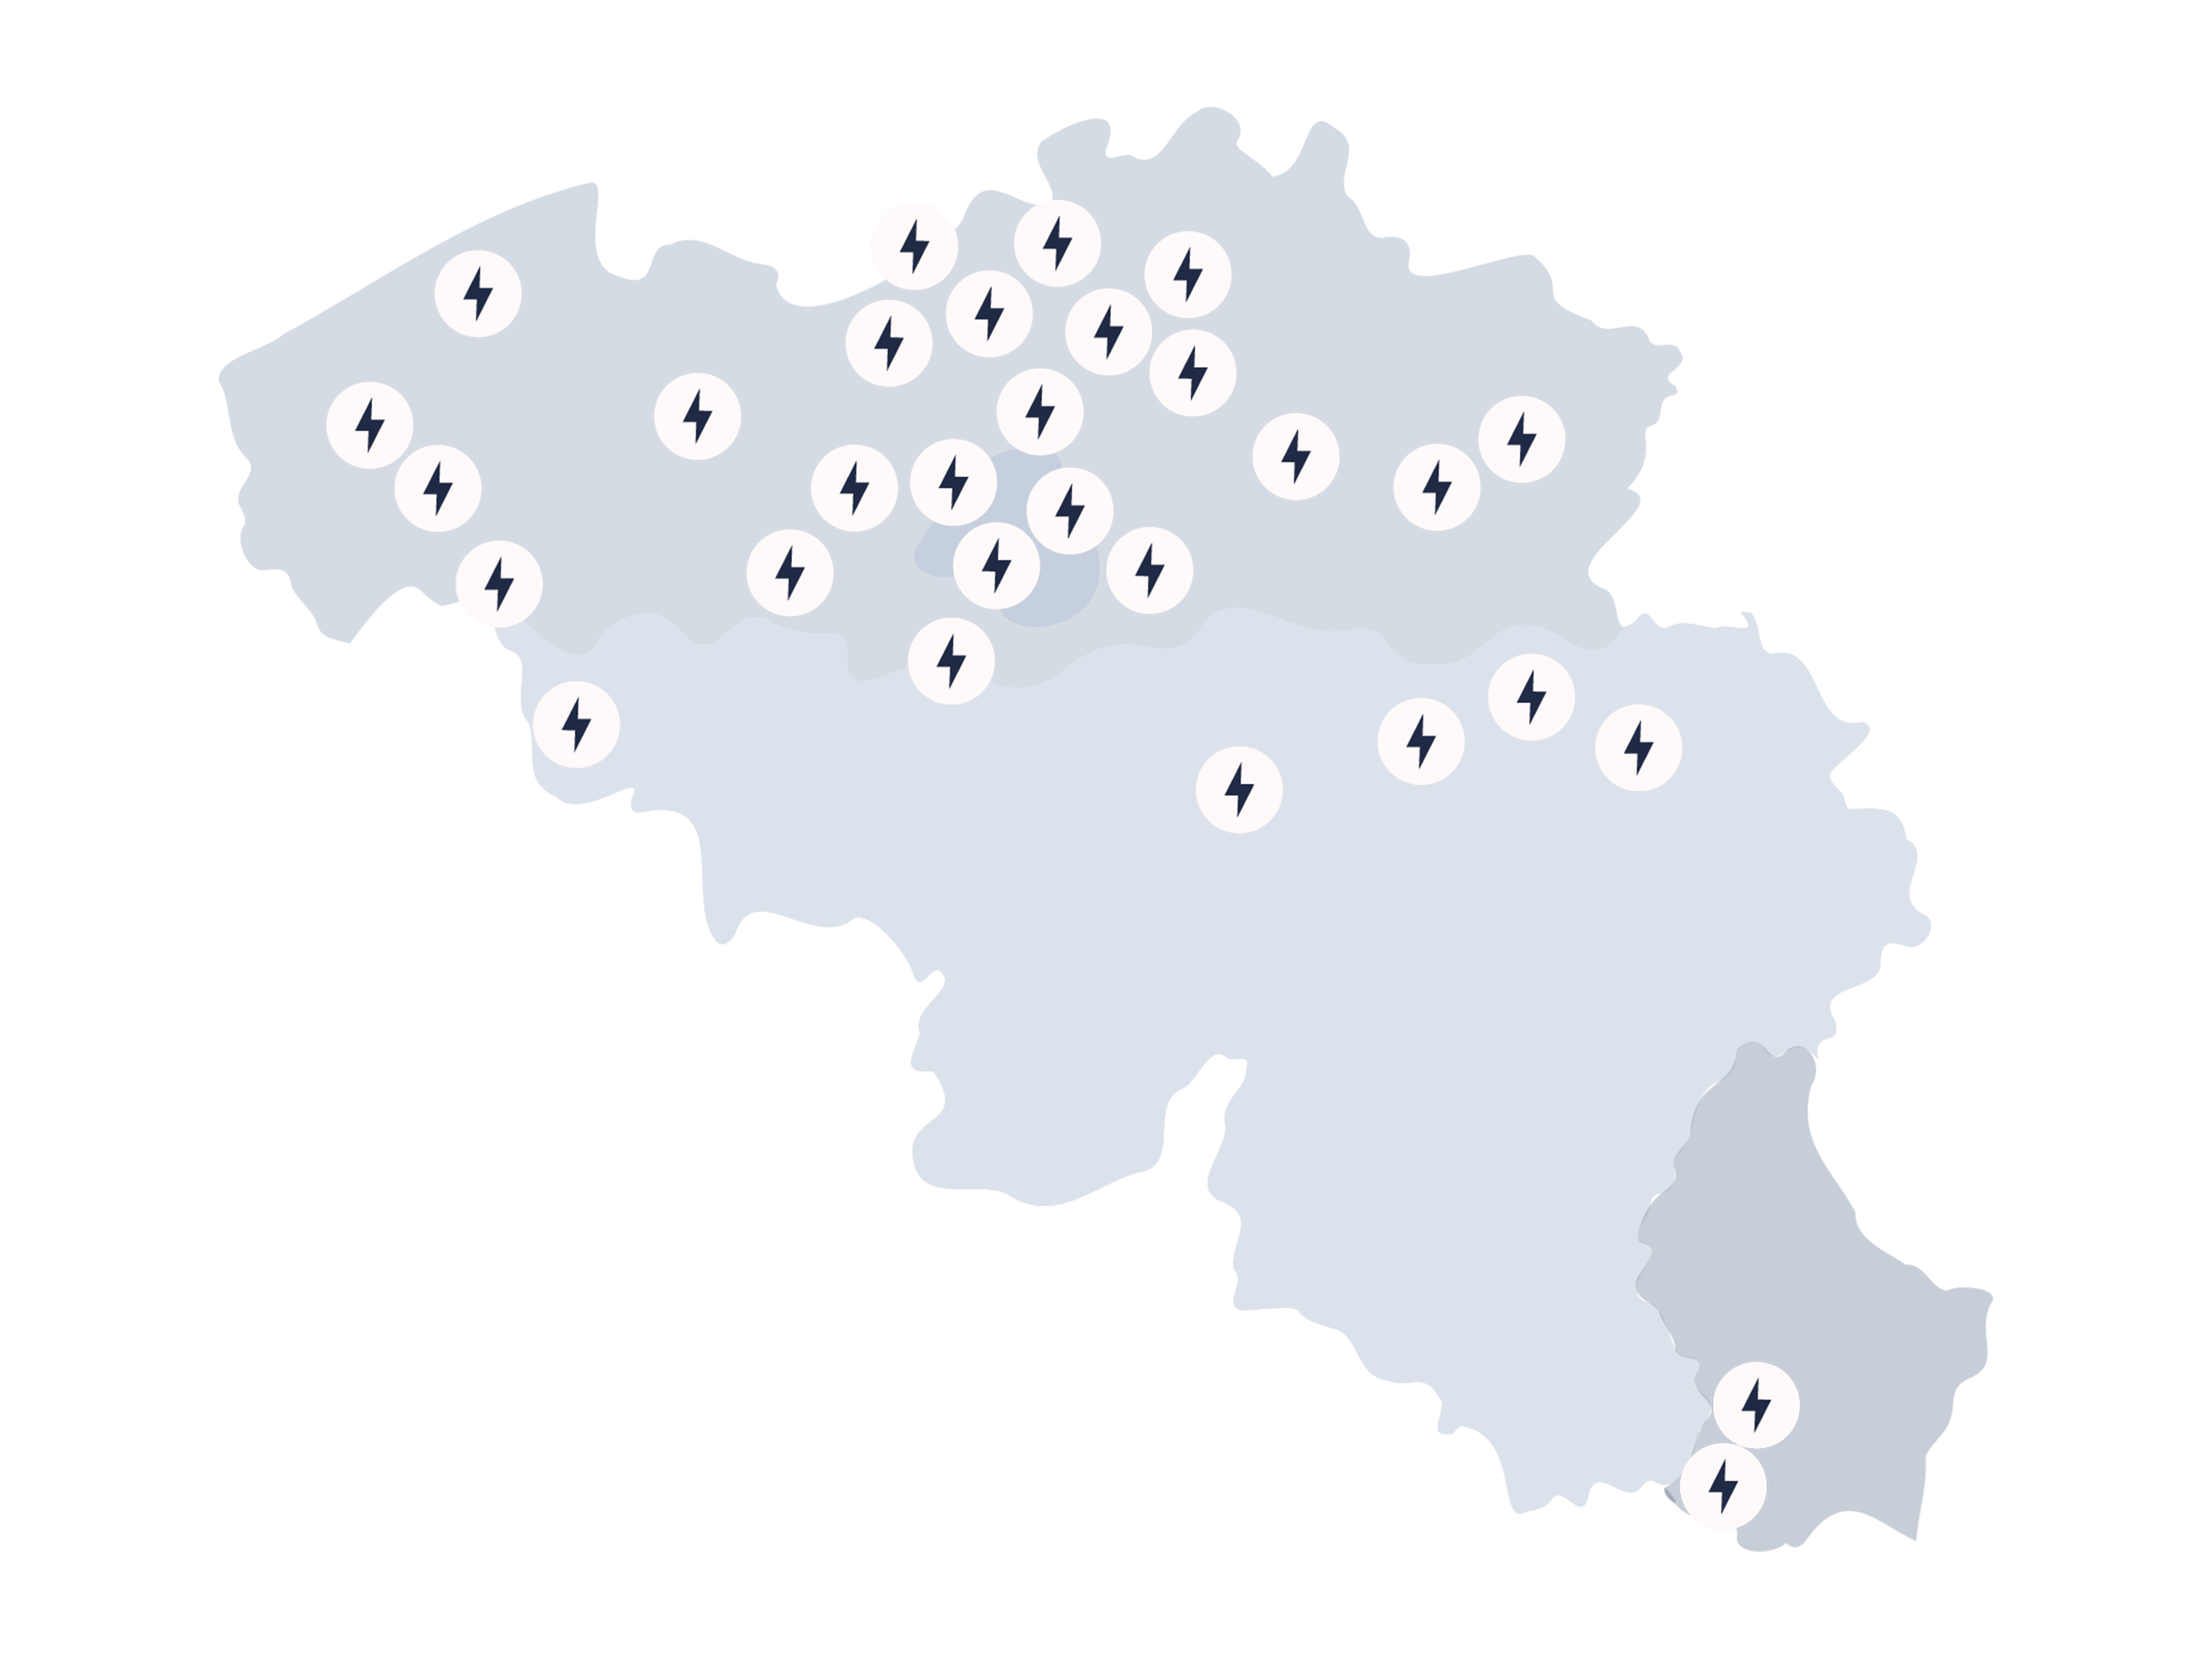 Carte de tous les emplacements Powerstop en Belgique et Luxembourg.